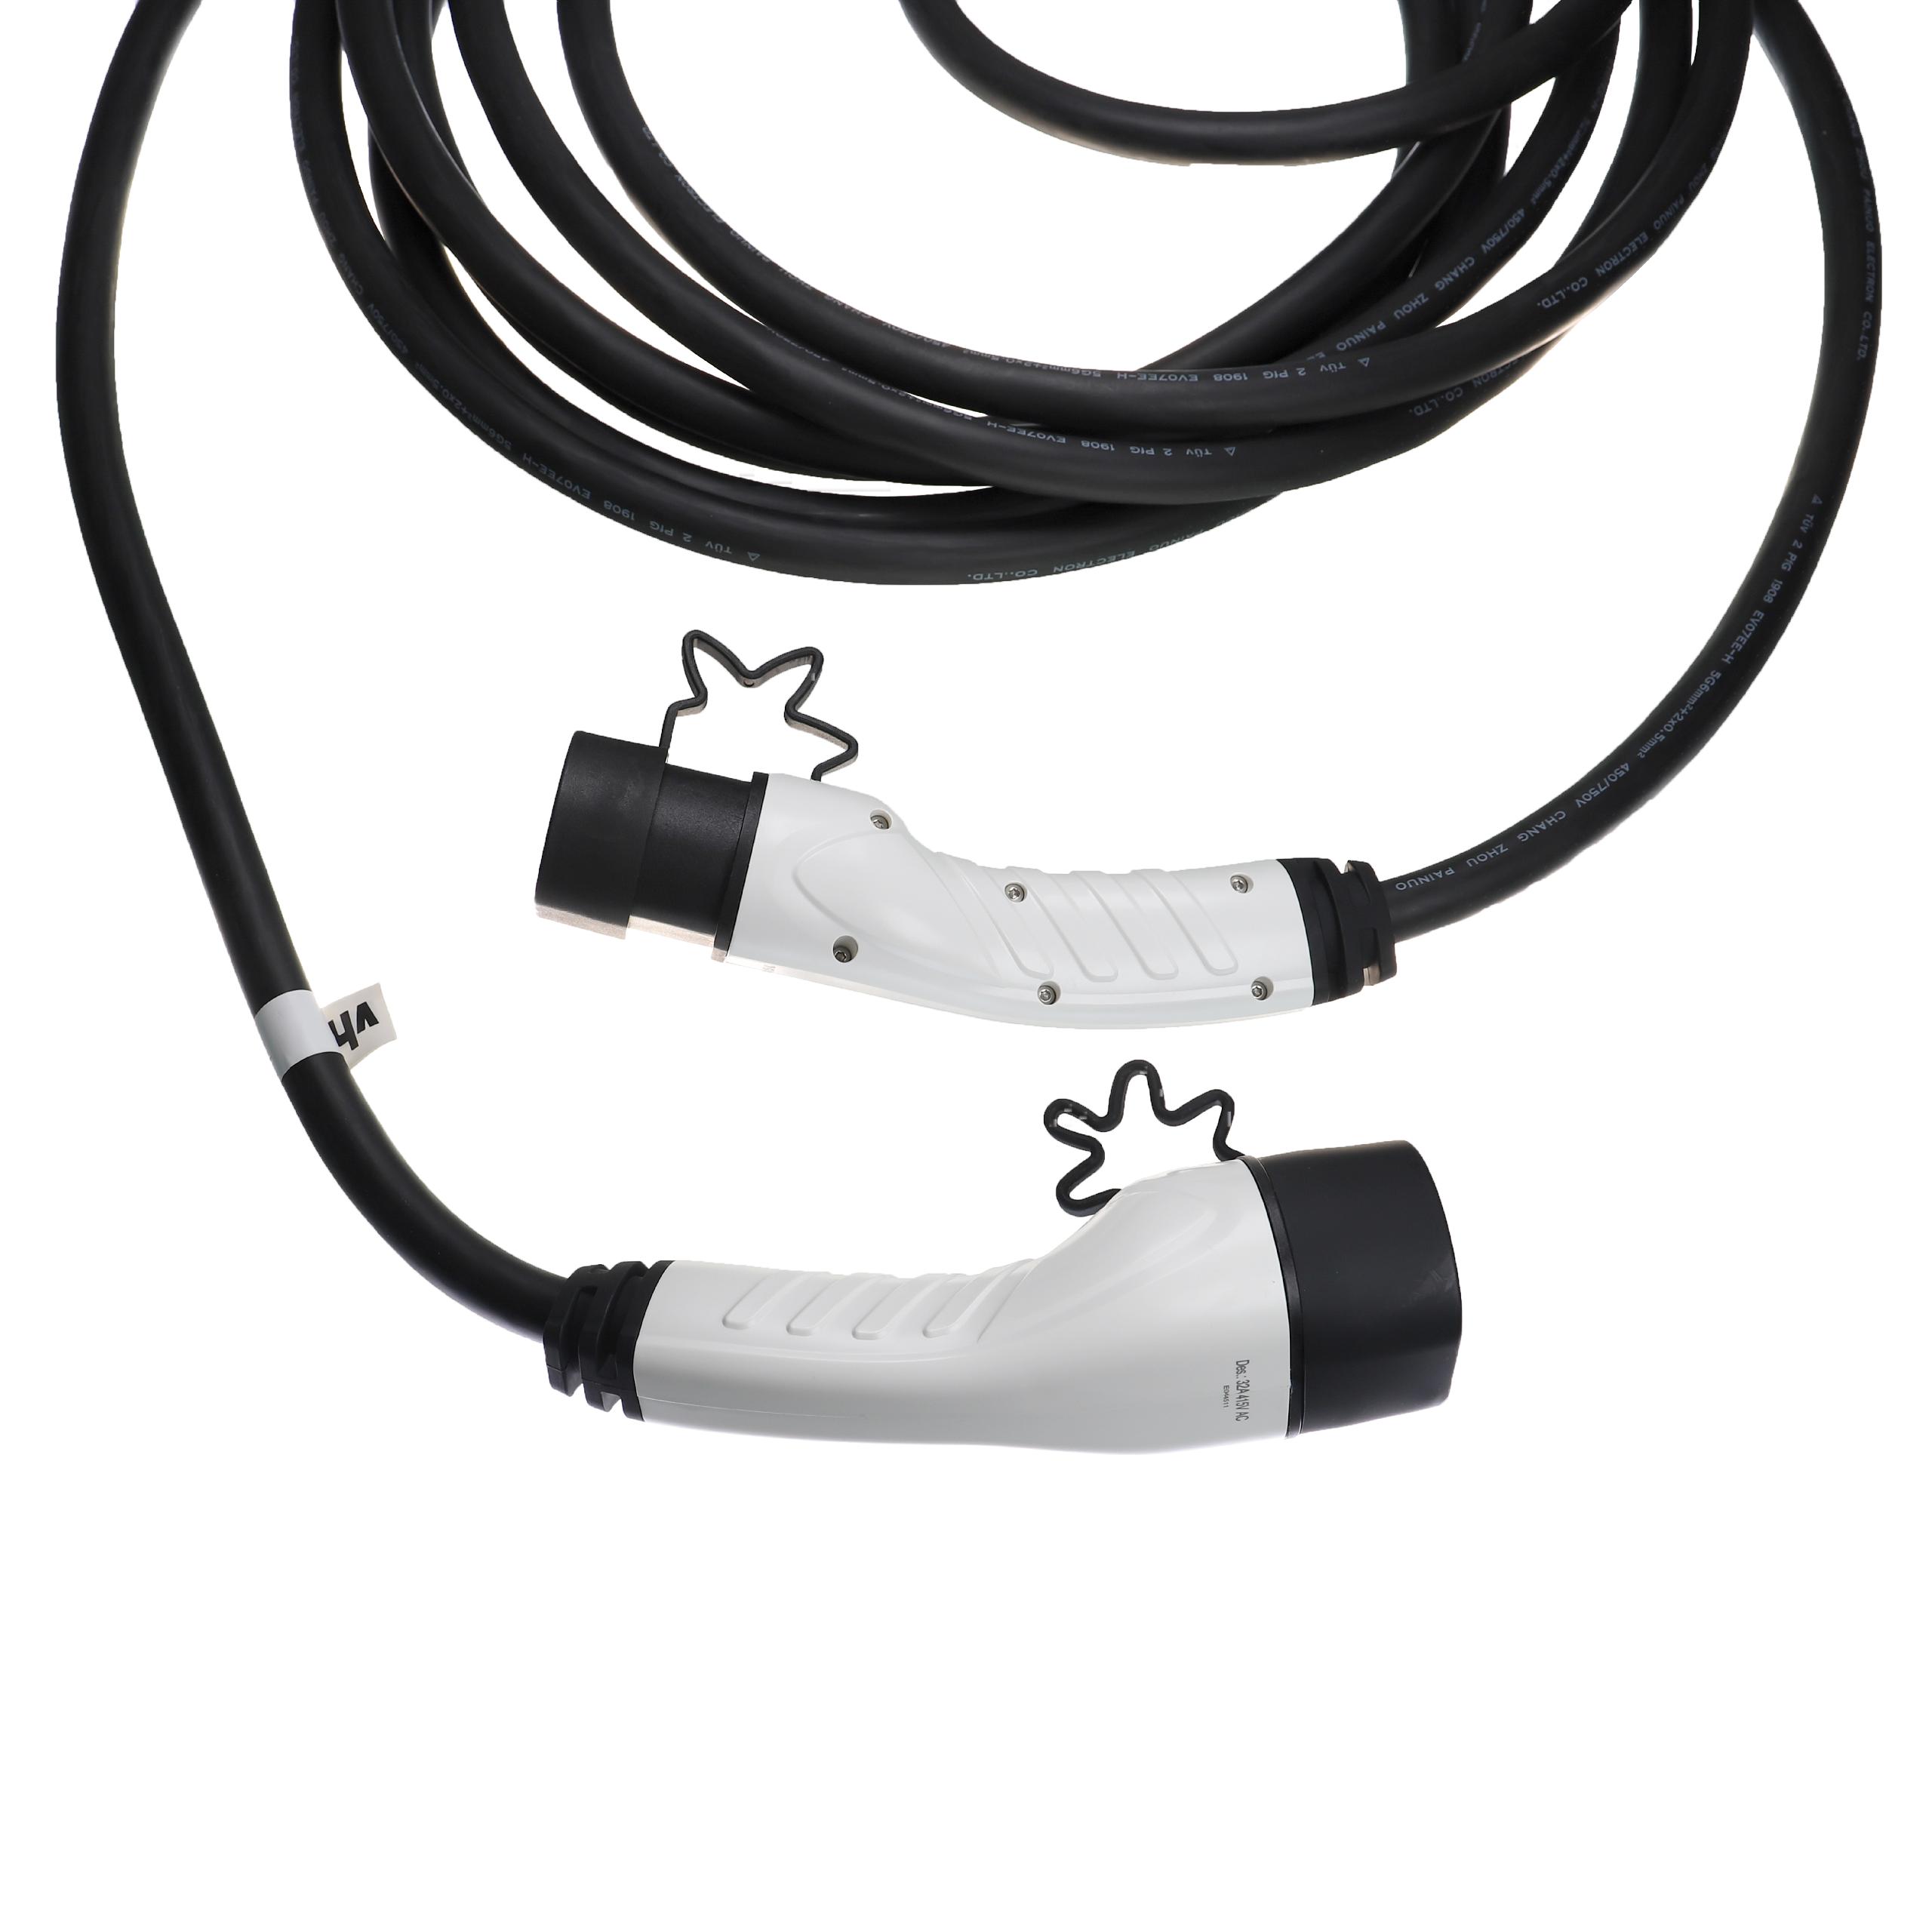 Cable de carga para coche eléctrico, híbrido enchufable - Cable tipo 2 a tipo 2, 3 fase, 32 A, 22 kW, 10 m